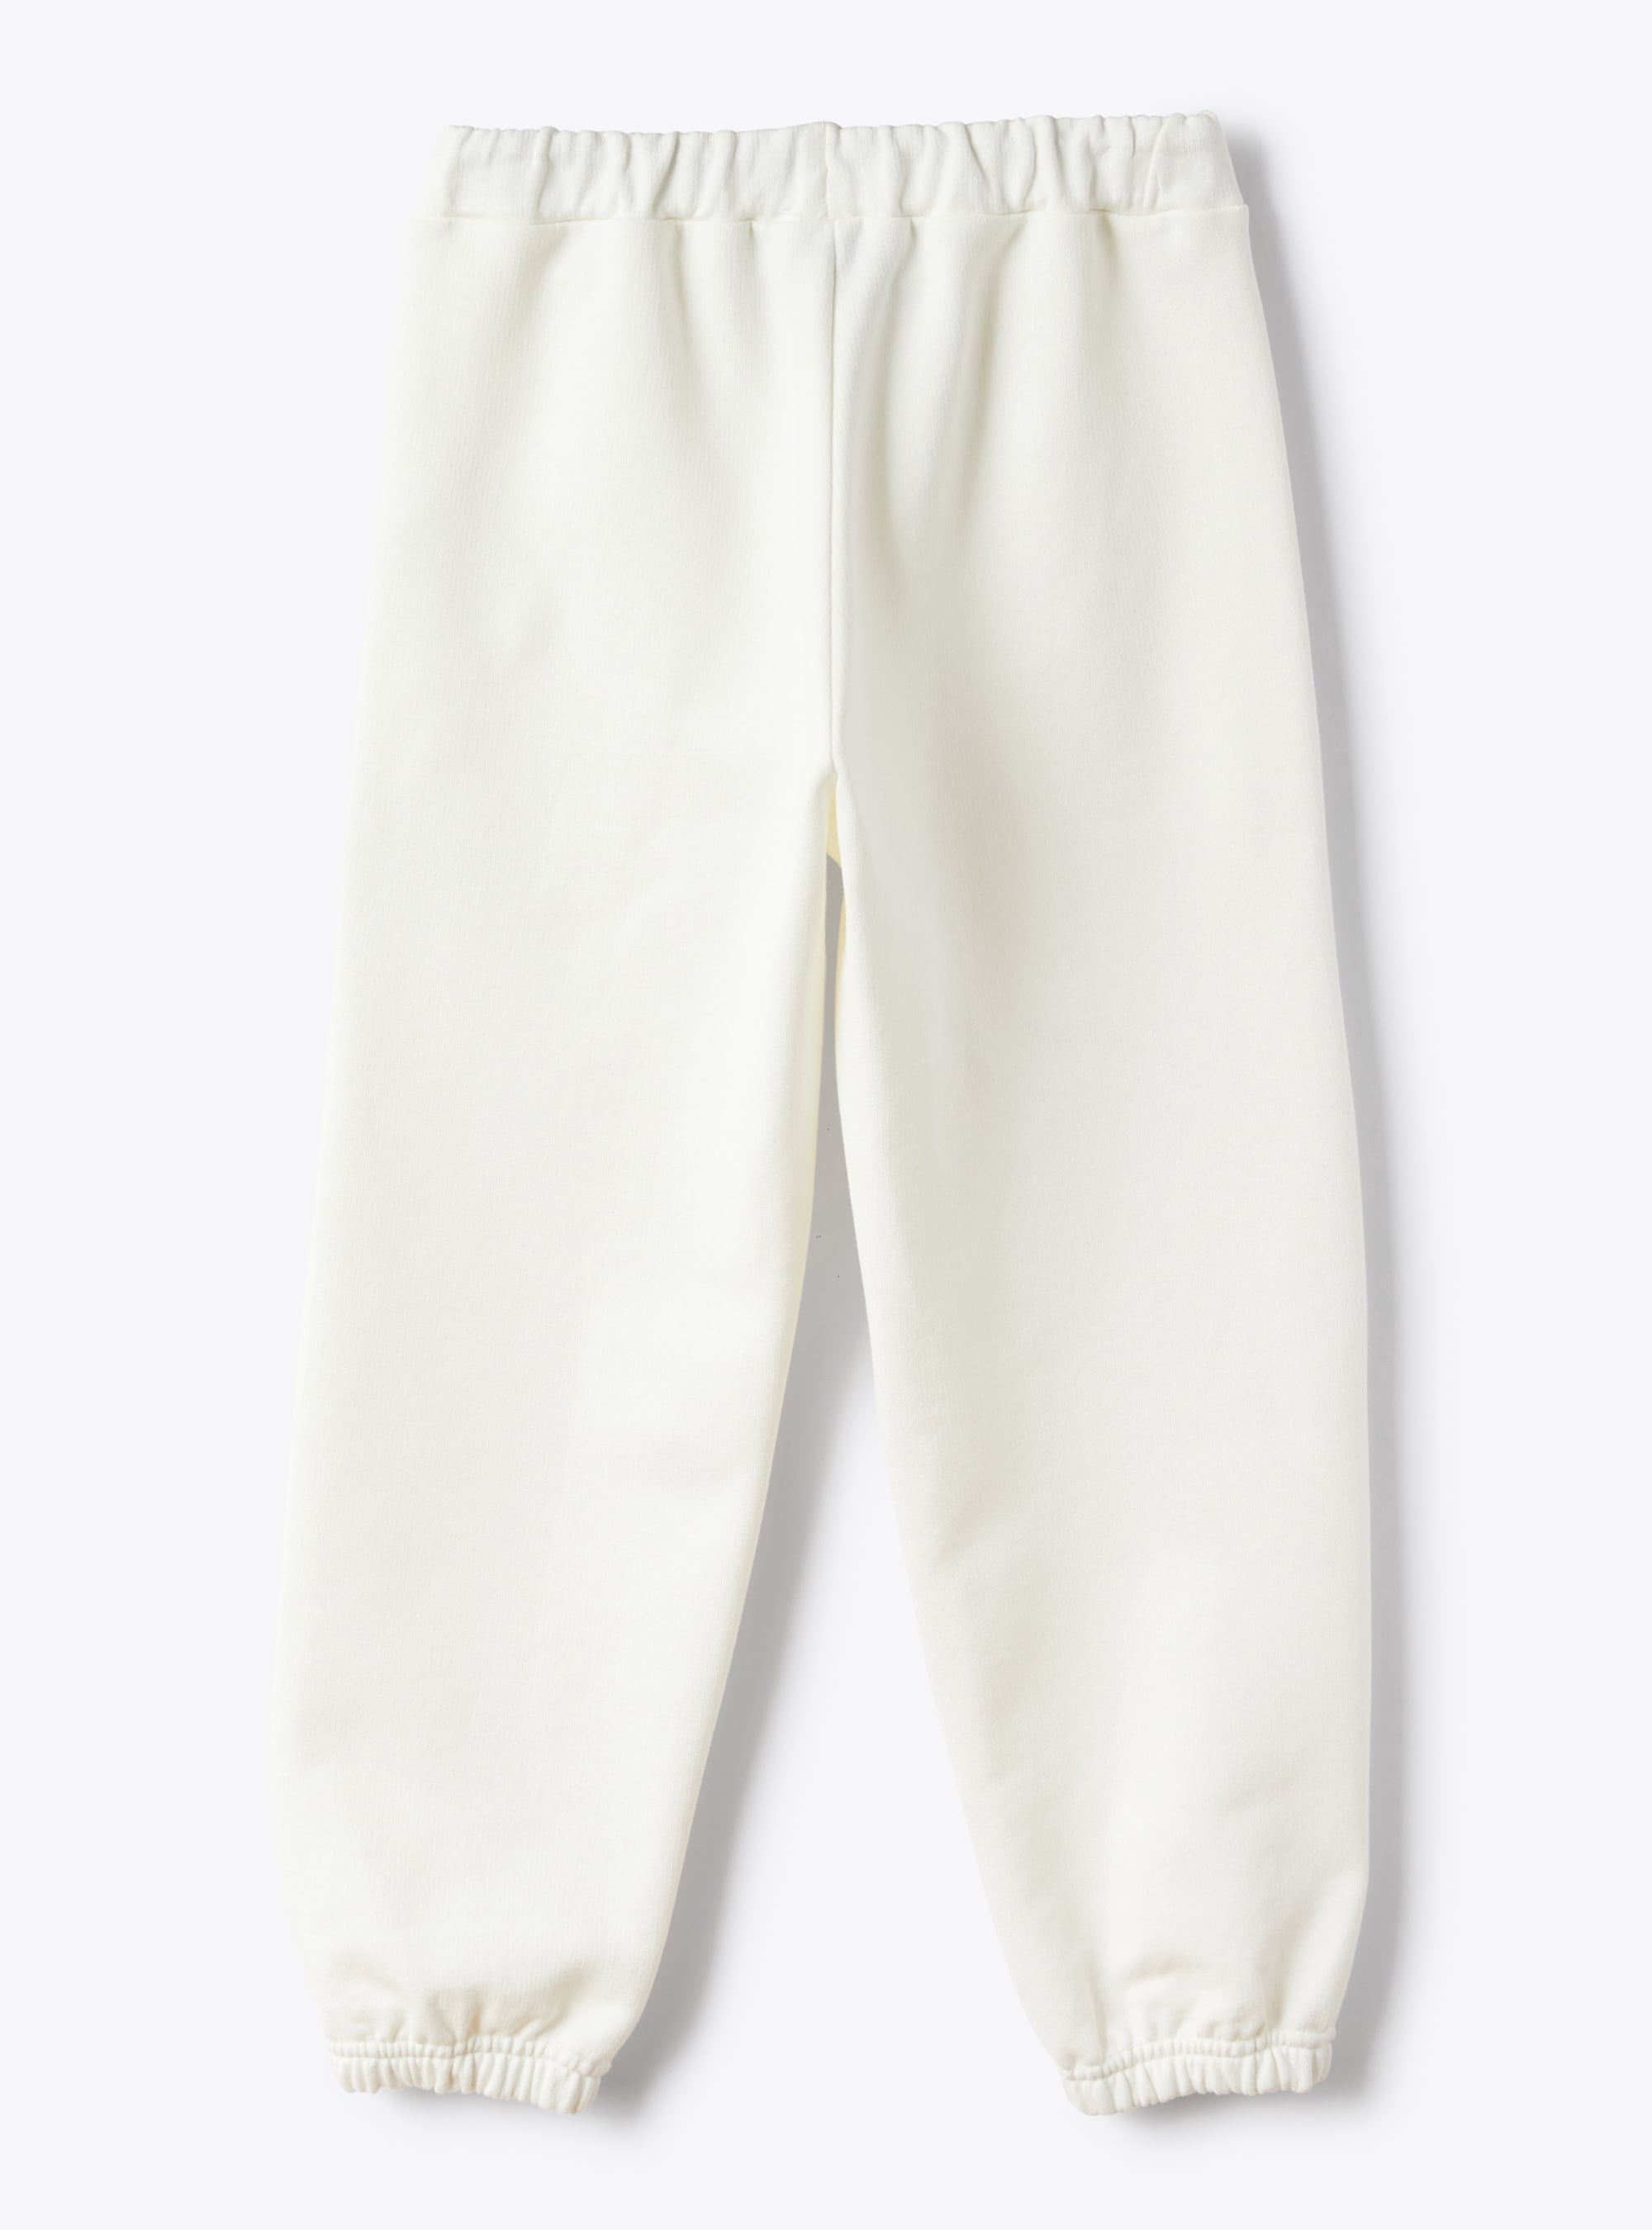 Joggers in white cotton fleece - White | Il Gufo